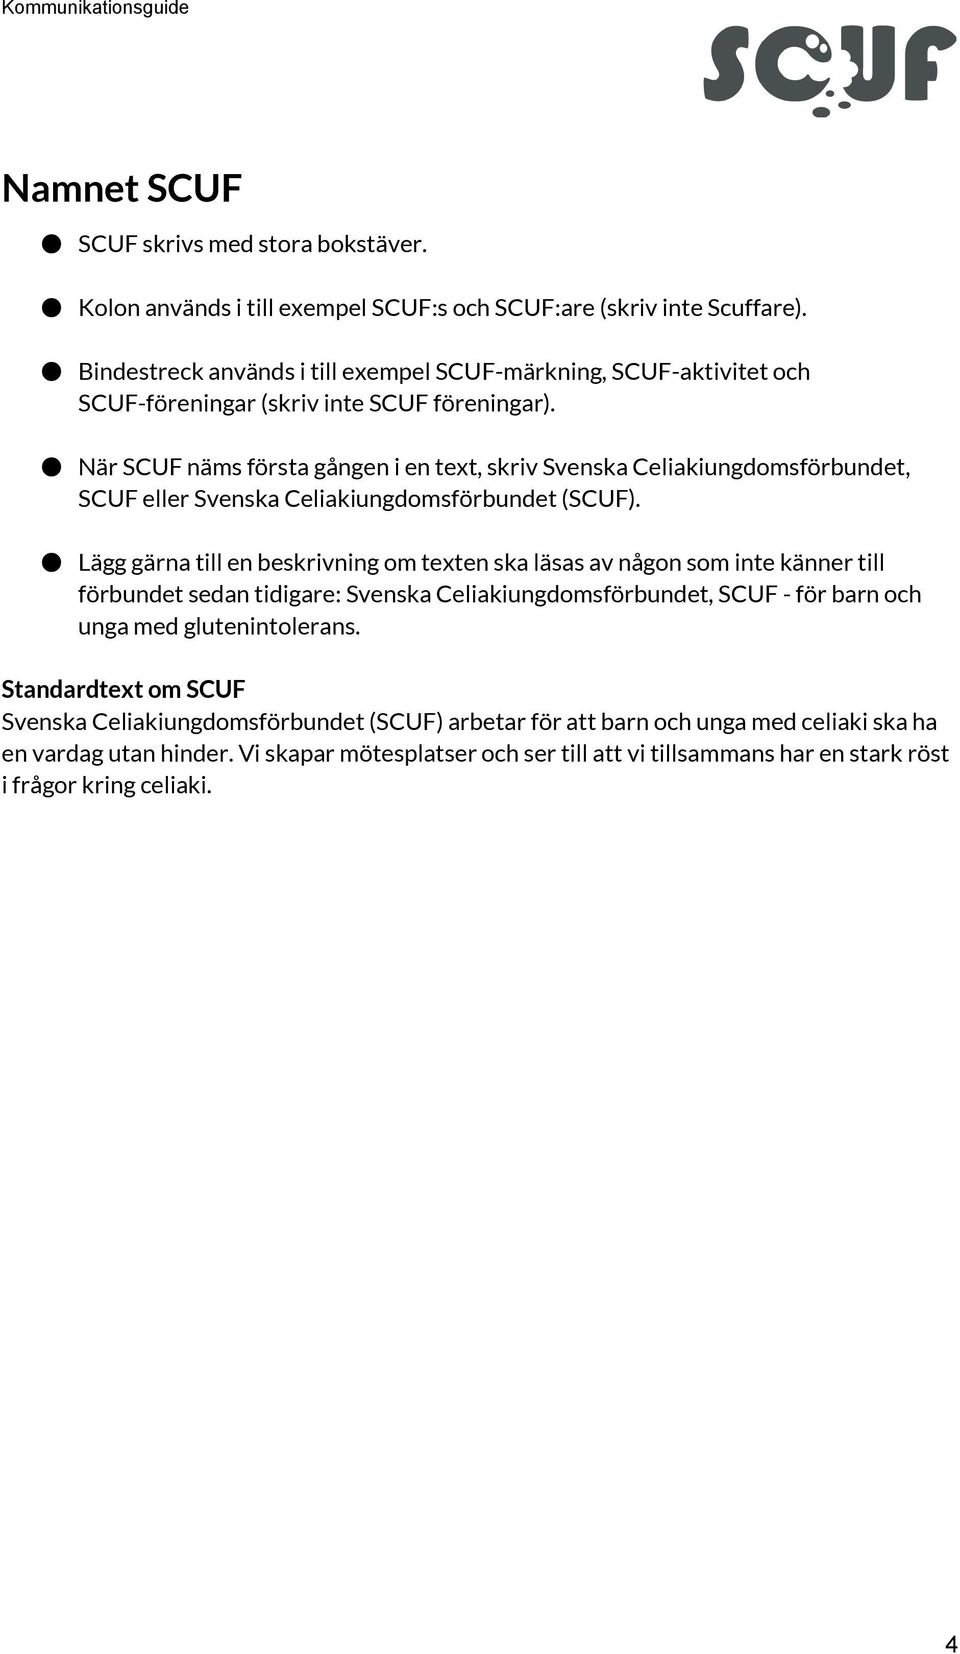 När SCUF näms första gången i en text, skriv Svenska Celiakiungdomsförbundet, SCUF eller Svenska Celiakiungdomsförbundet (SCUF).